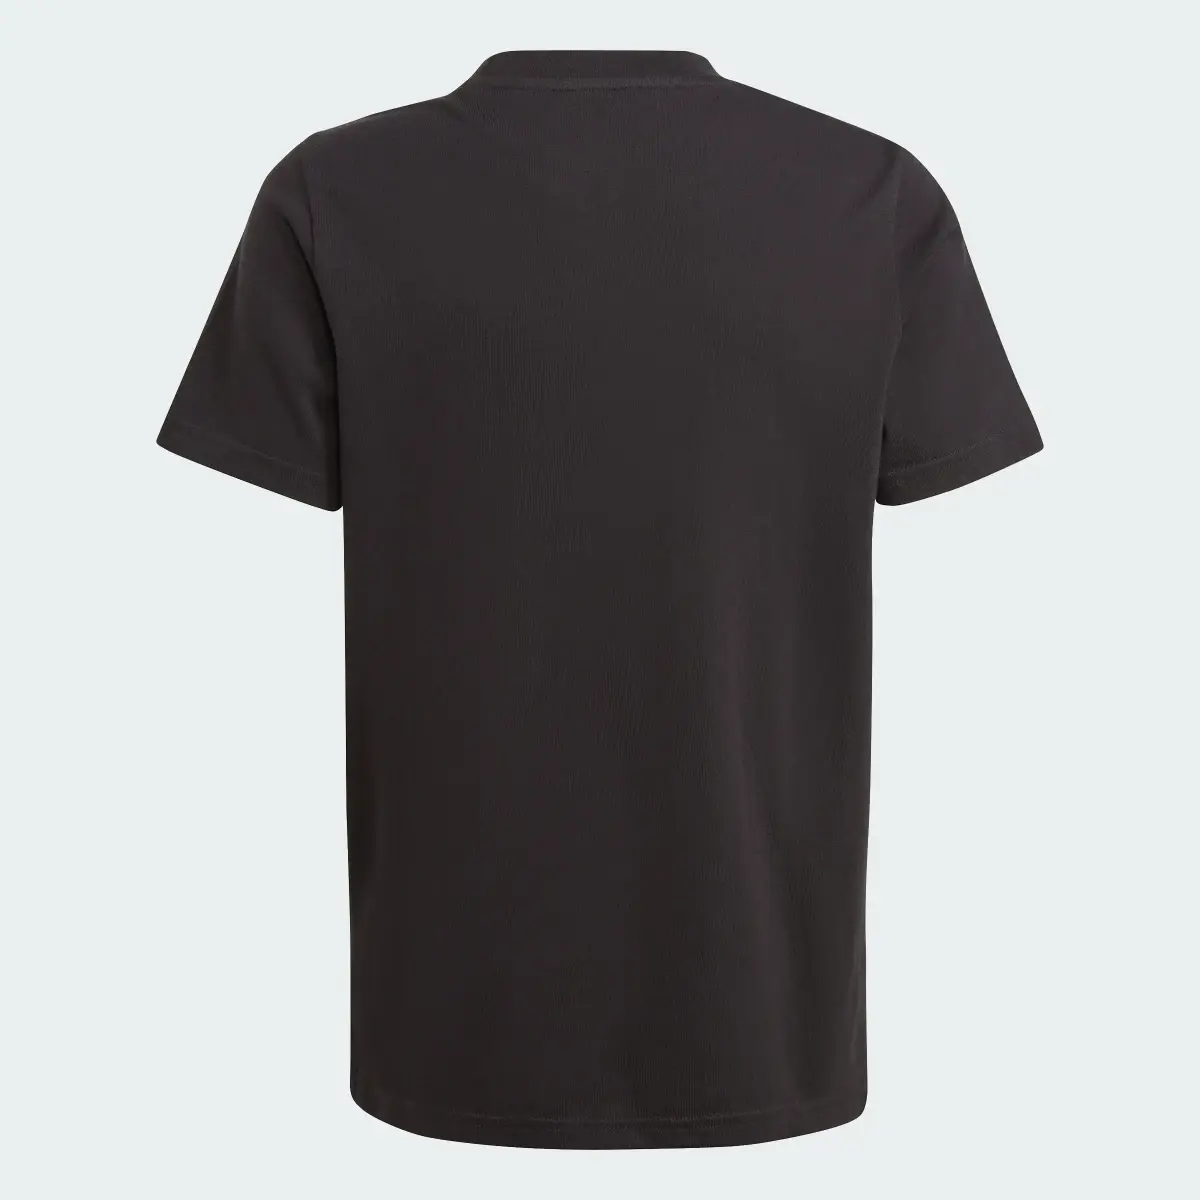 Adidas Camiseta All Blacks Graphic. 2